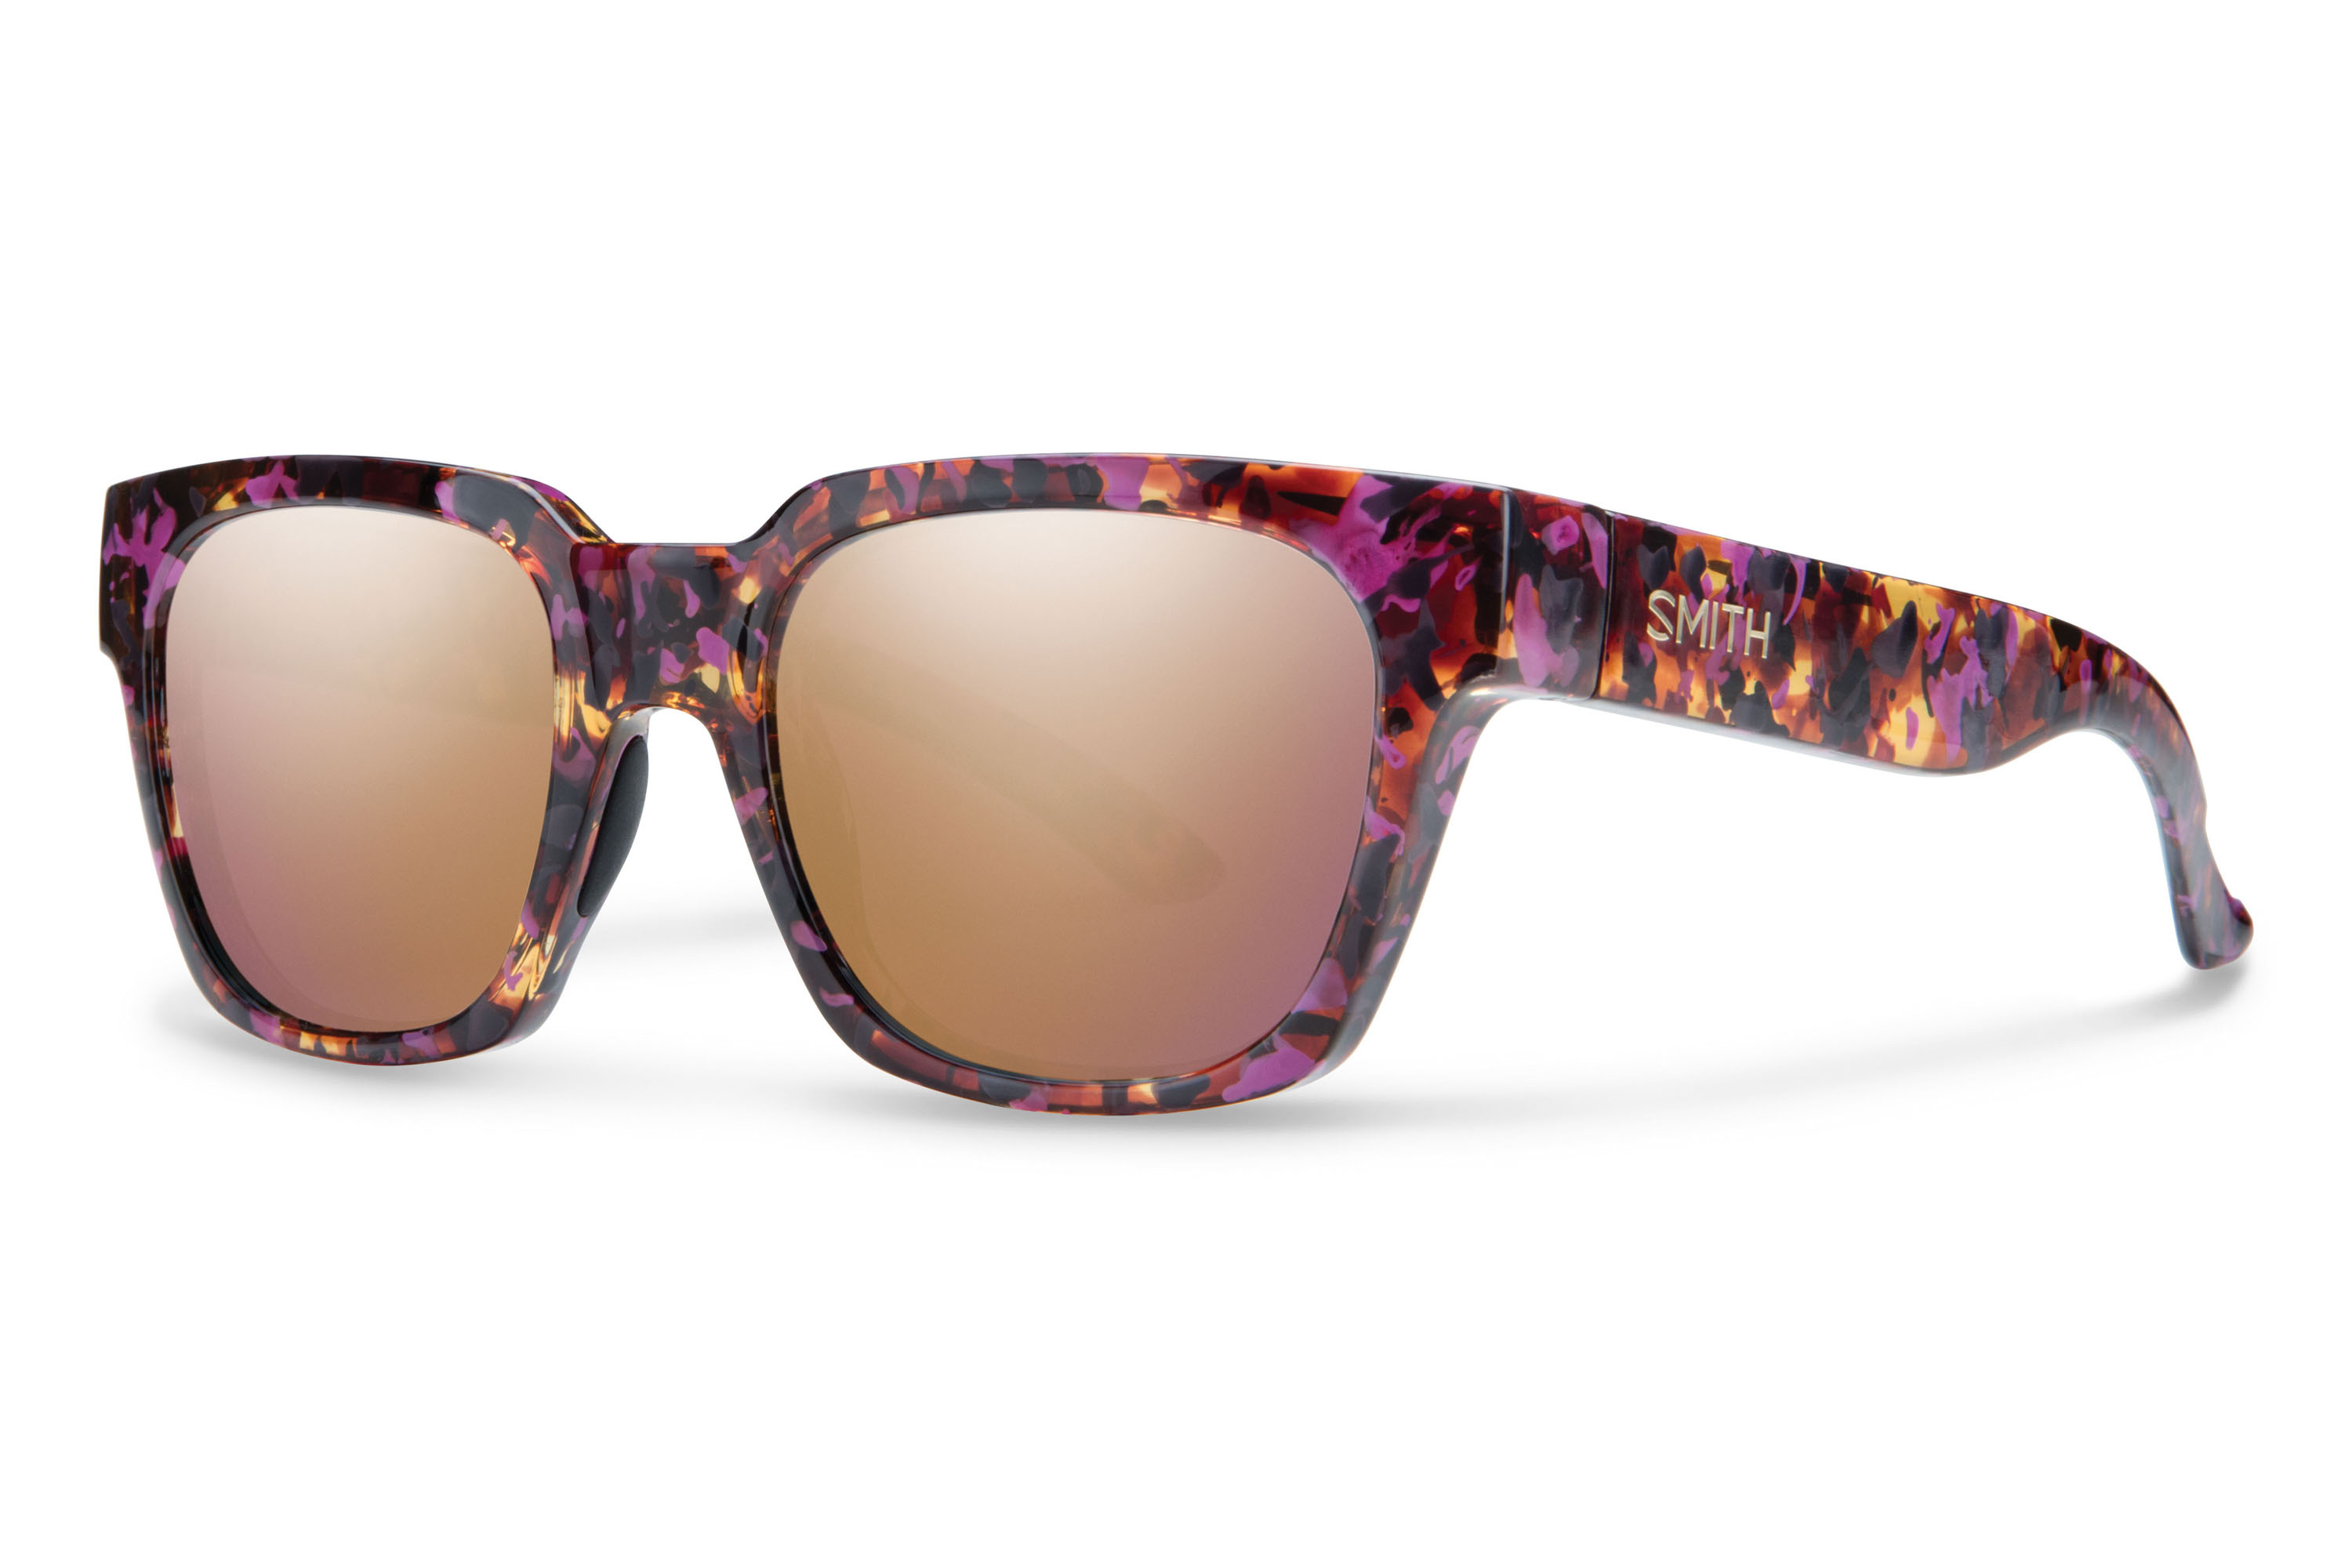  Smith Comstock Sonnenbrille Einfach cool! Für die sonnigen Wintertage, wenn die Augen Schutz brauchen und der Tag Stil. Das Gestell aus umweltfreundlichem Kunststoff – aus erneuerbaren Rizinuspflanzen – trägt sich auch bei Kälte angenehm. 169,00 Euro 